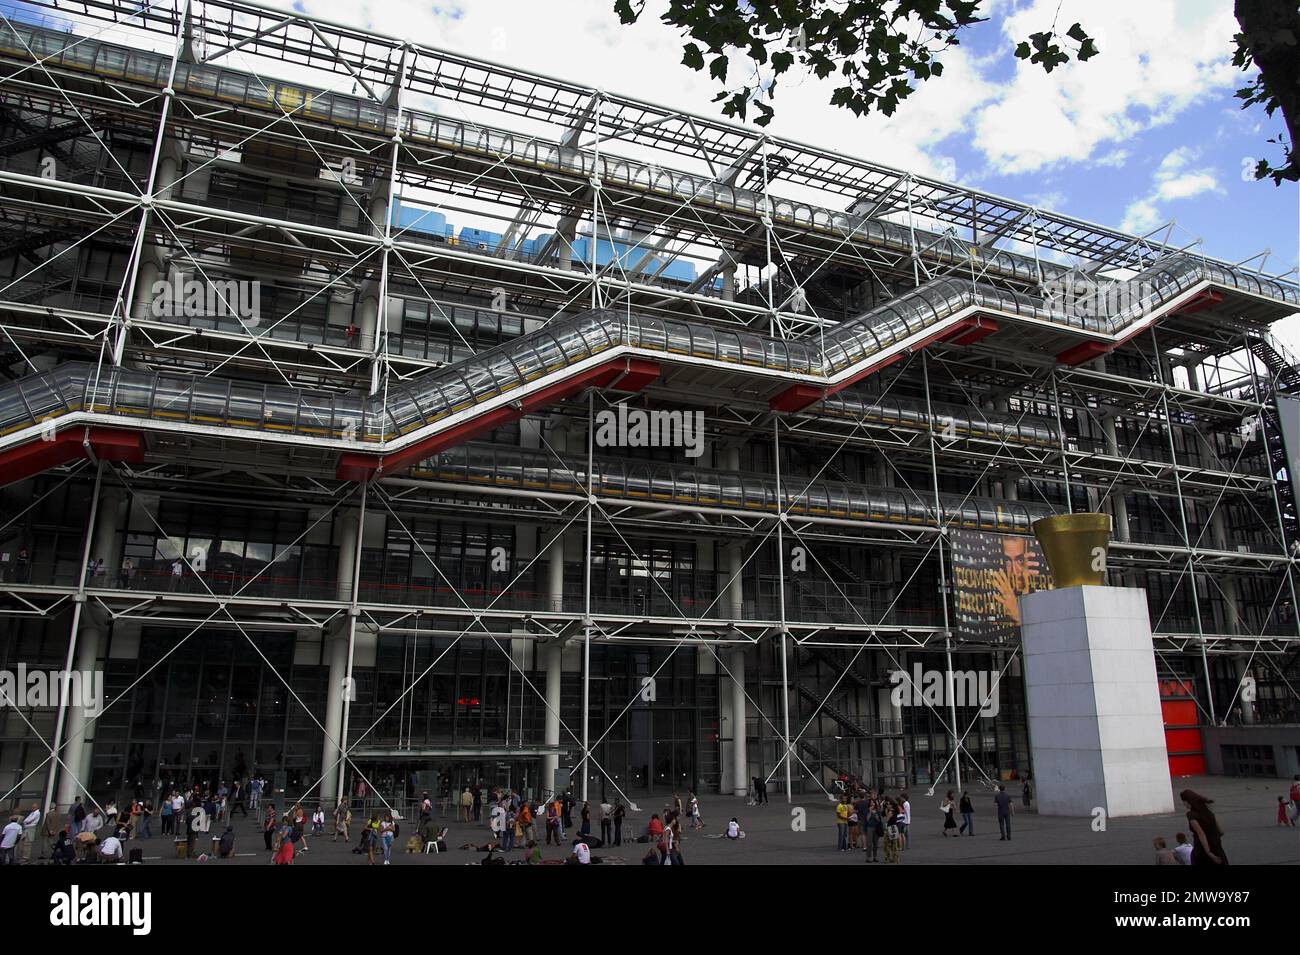 Paryż, Paris, Francja, France, Frankreich, Centre national d'art et de culture Georges-Pompidou; Centre national d'art et de culture Georges Pompidou Banque D'Images